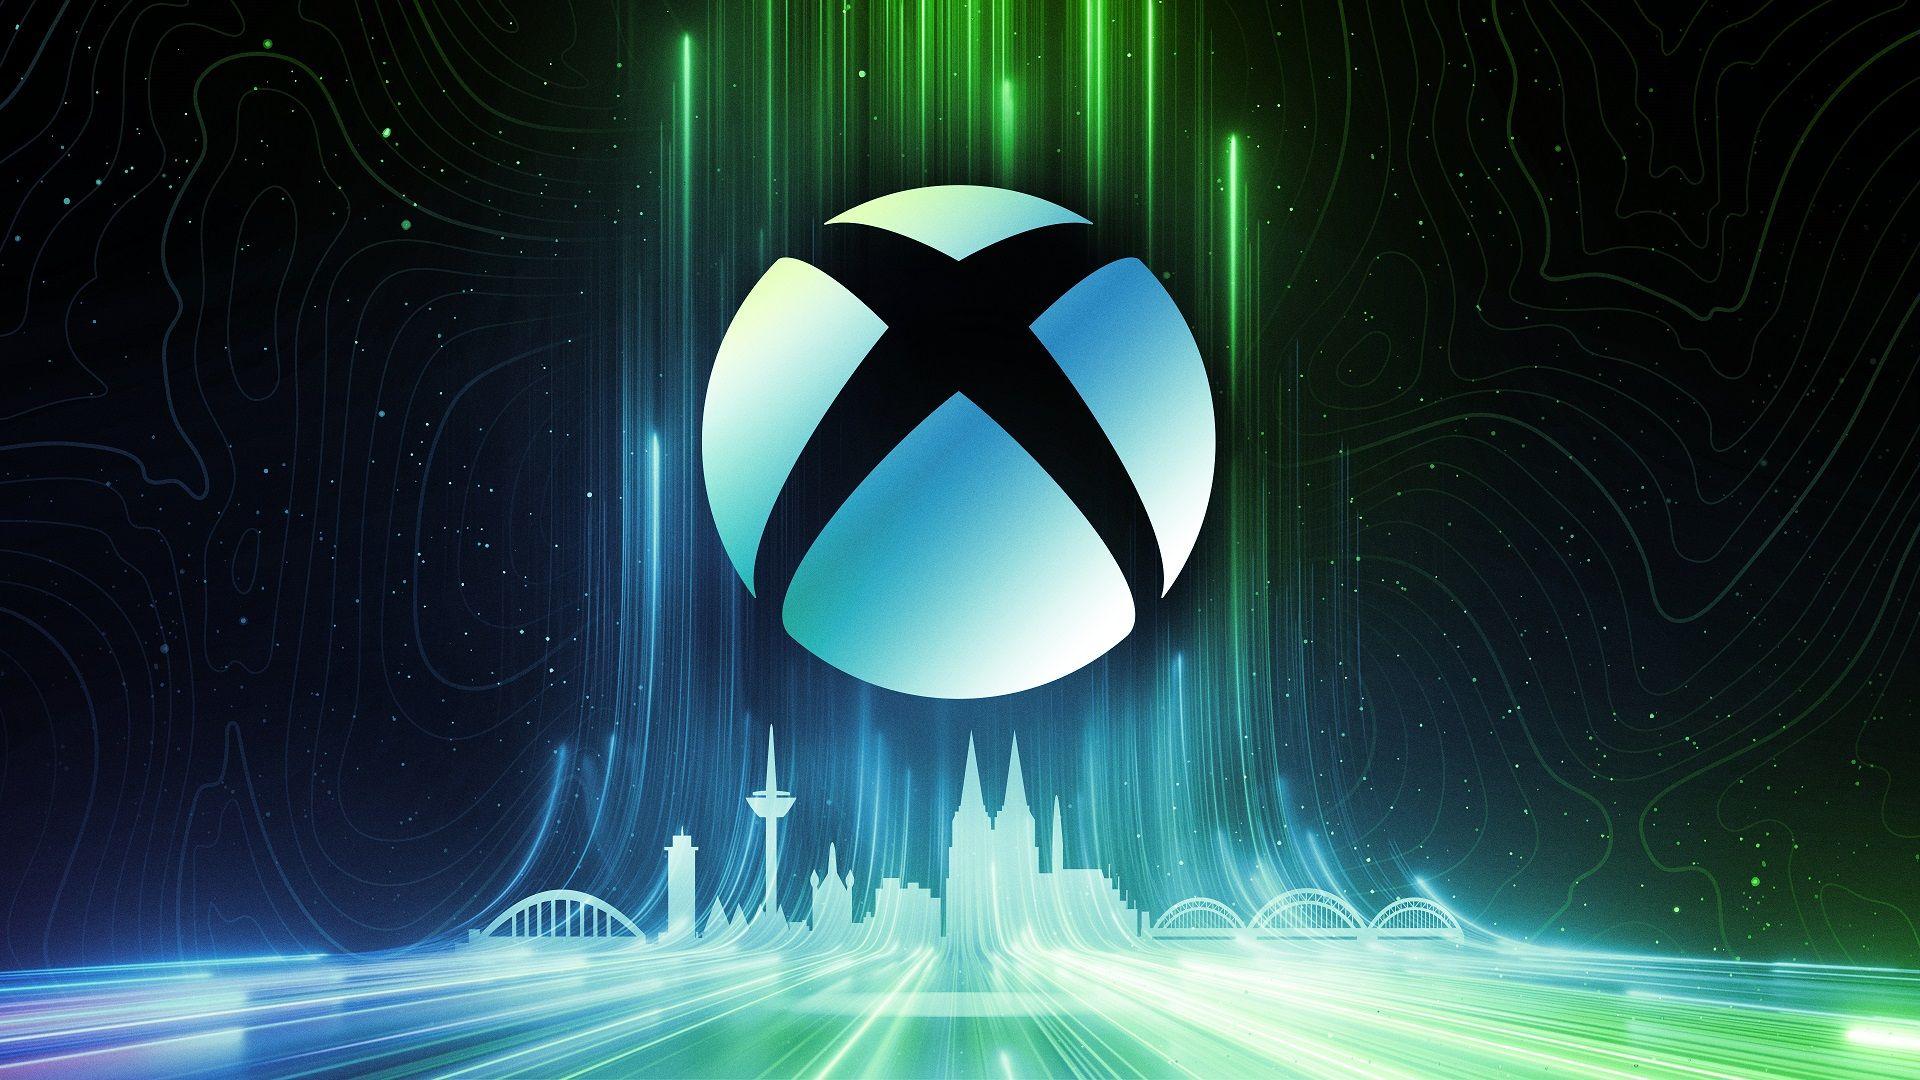 Die Xbox Handheld-Konsole ist ein Gerät der Xbox-Familie, das möglicherweise sehr bald angekündigt wird